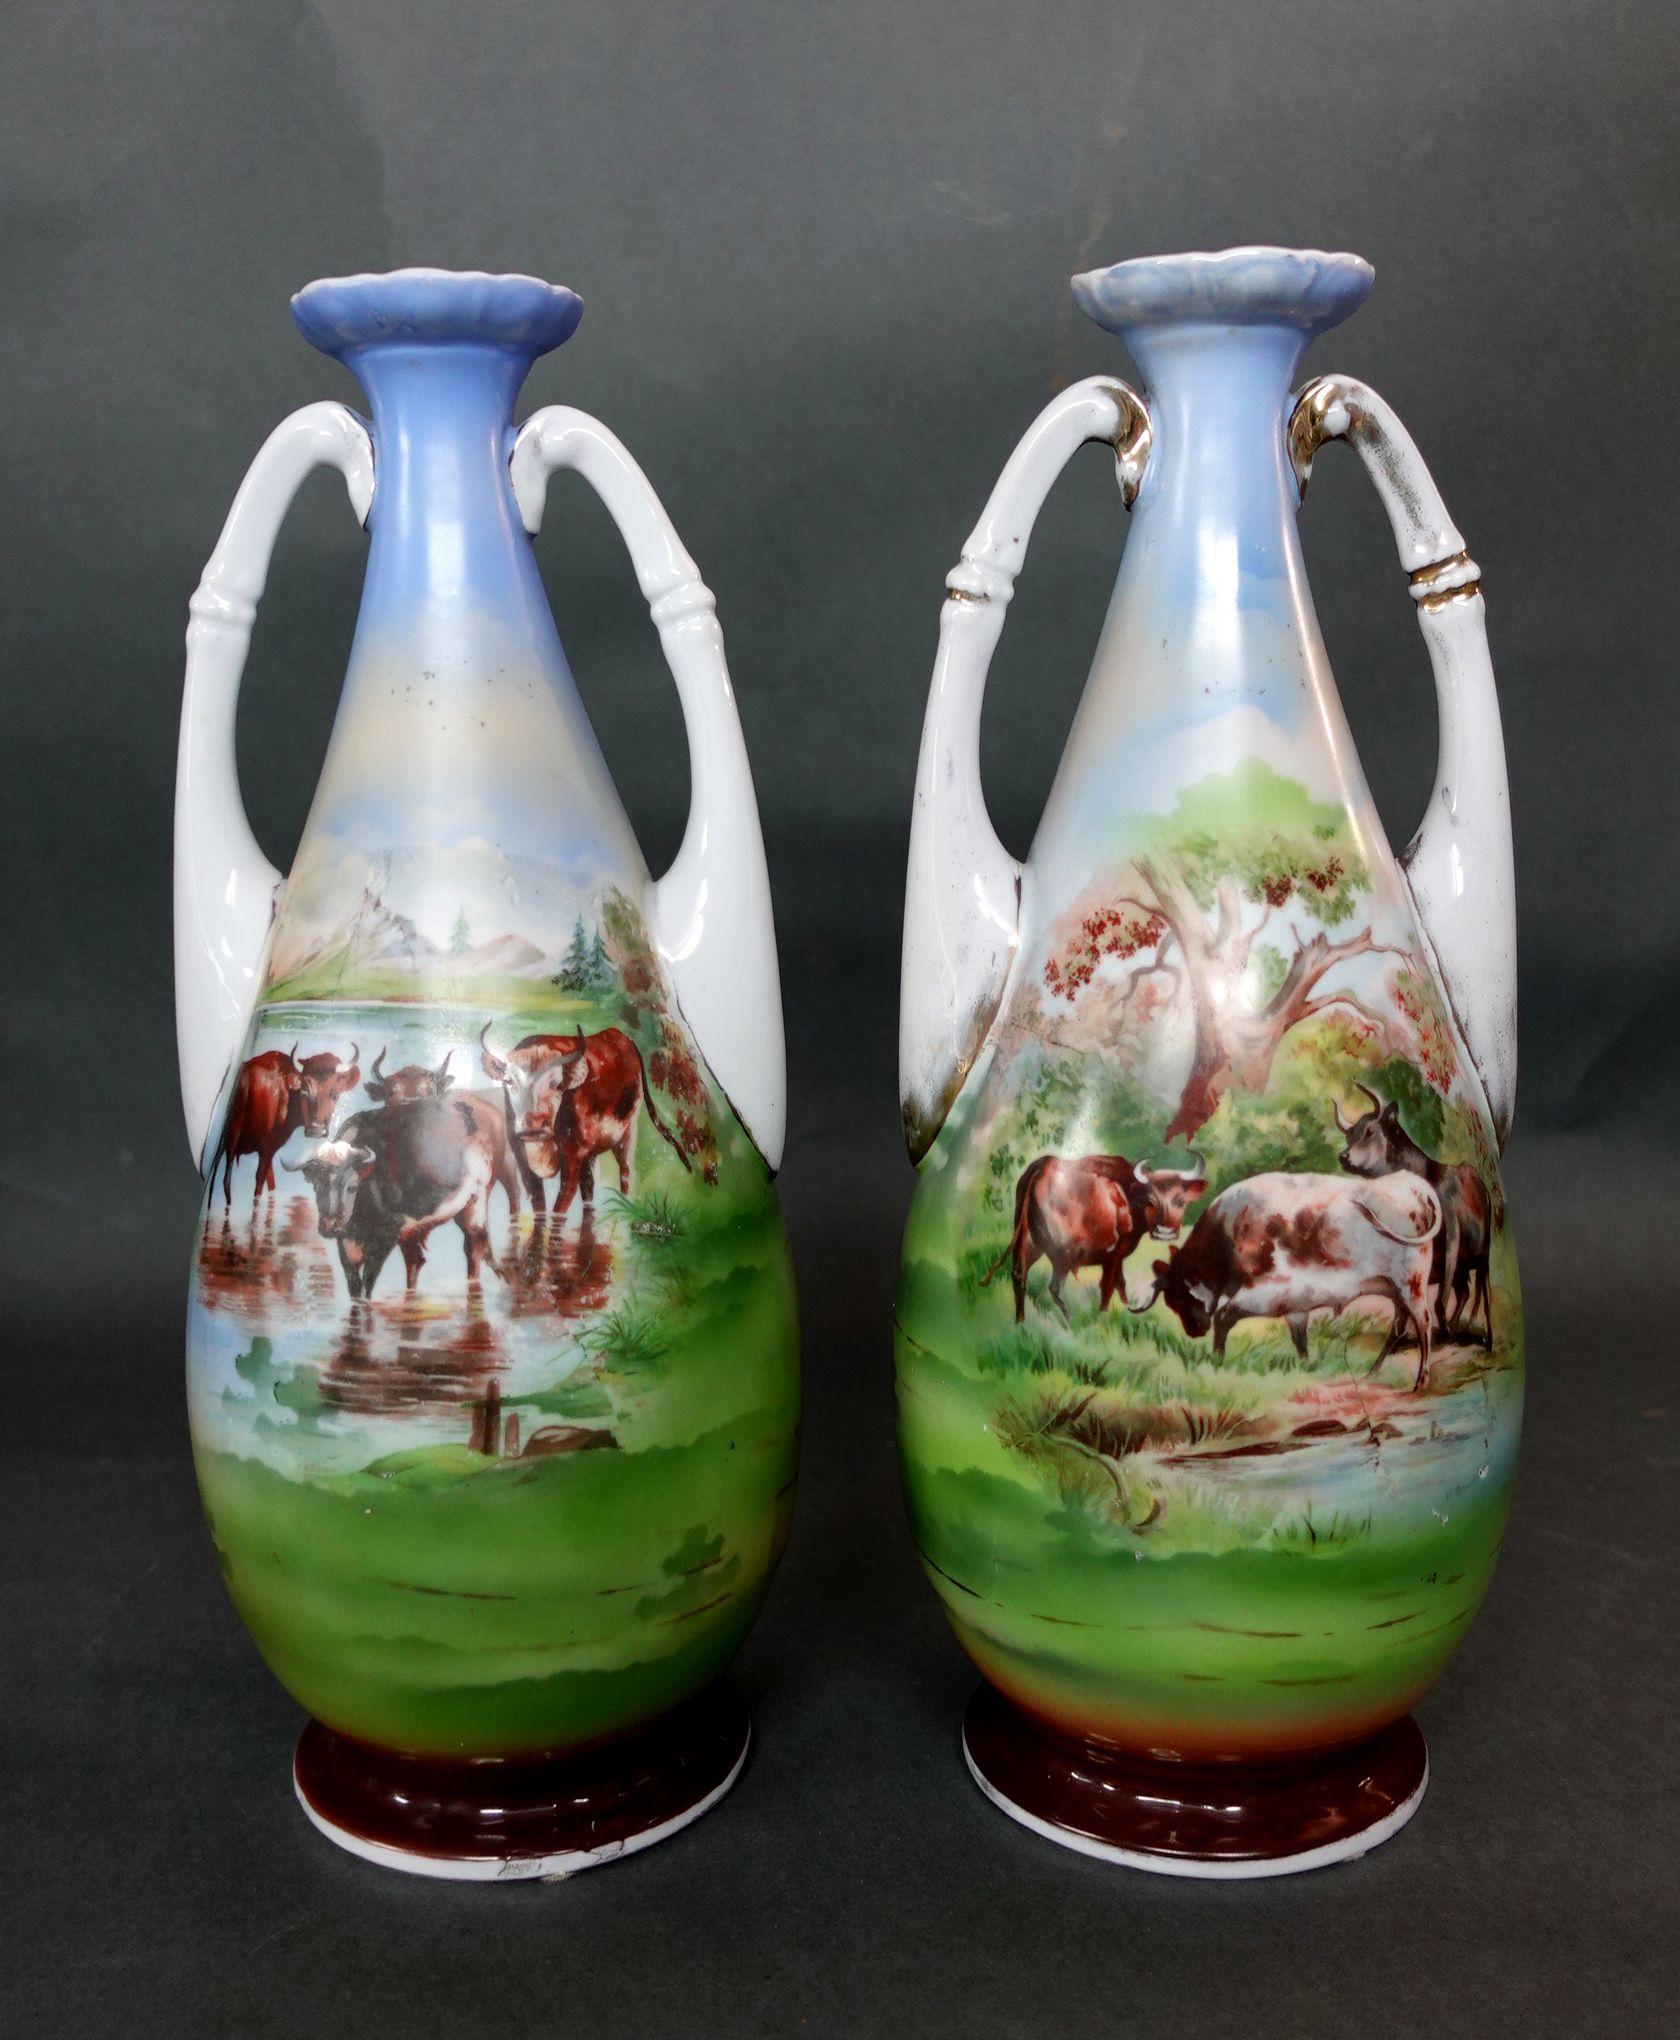 Paire de vases Victoria Austria des années 1890. Comprenant des vases en porcelaine autrichienne avec des scènes d'abreuvement du bétail peintes à la main. Mesure : Hauteur 14 pouces.
 